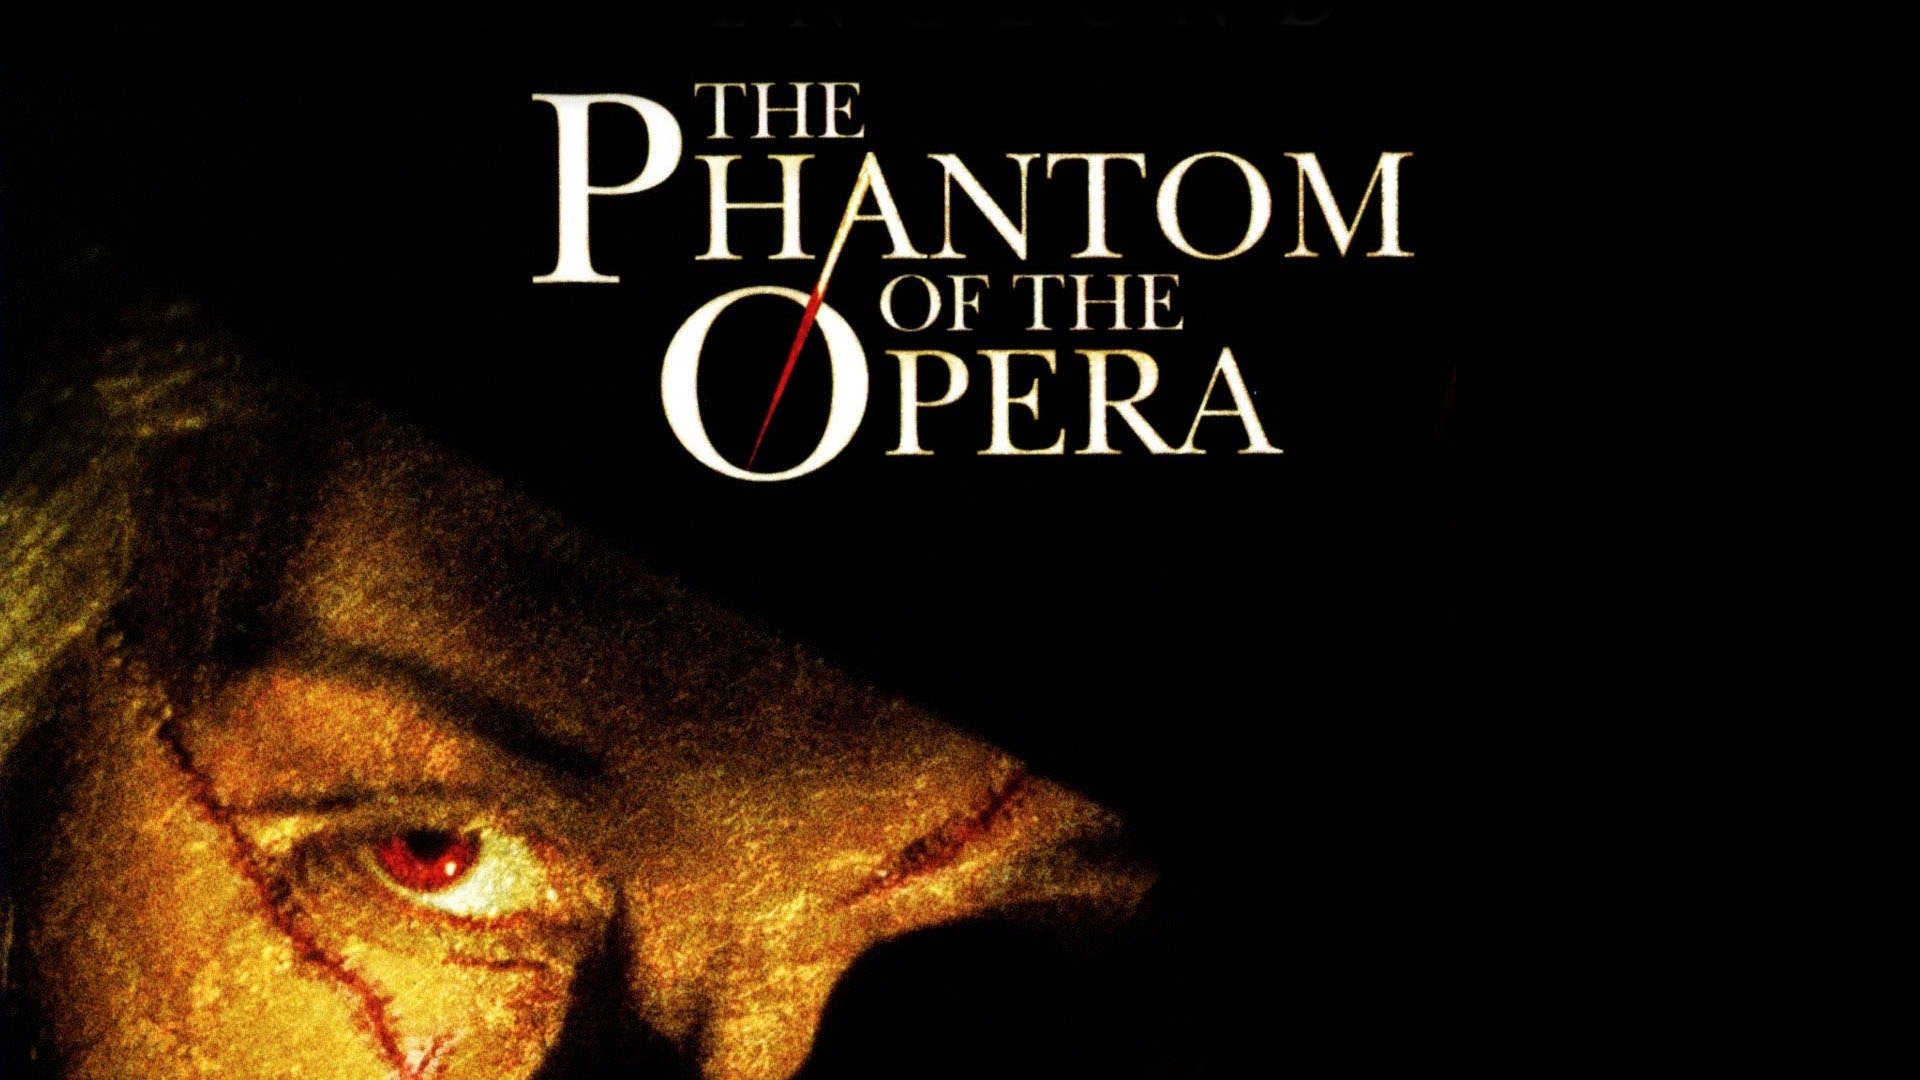 The Phantom of the Opera pic